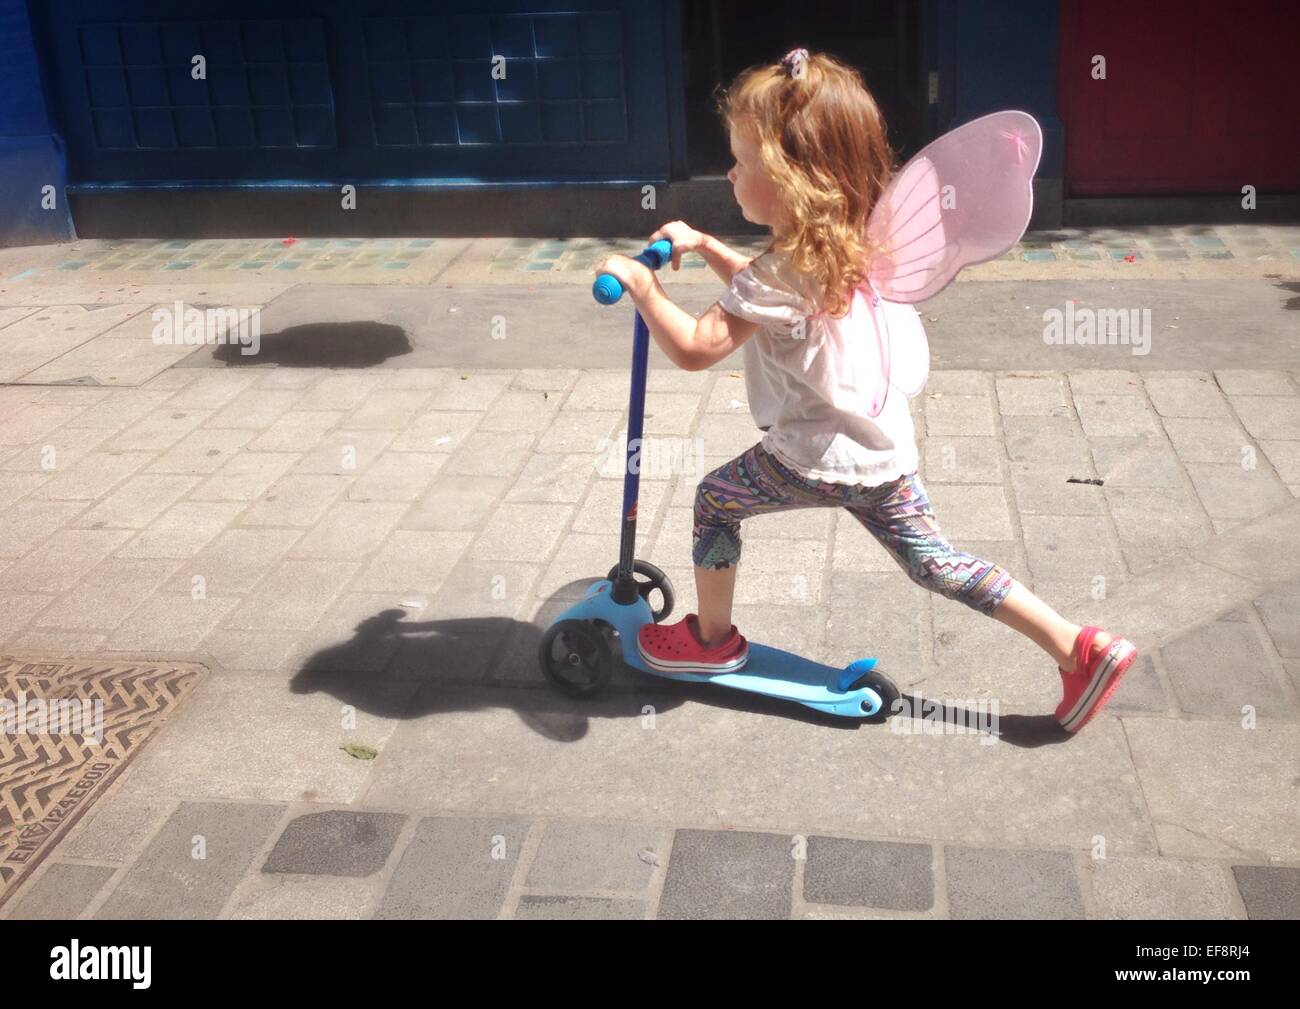 Royaume-uni, Angleterre, Londres, Portrait of Girl (2-3) avec fairy wings riding scooter sur la chaussée de la ville Banque D'Images